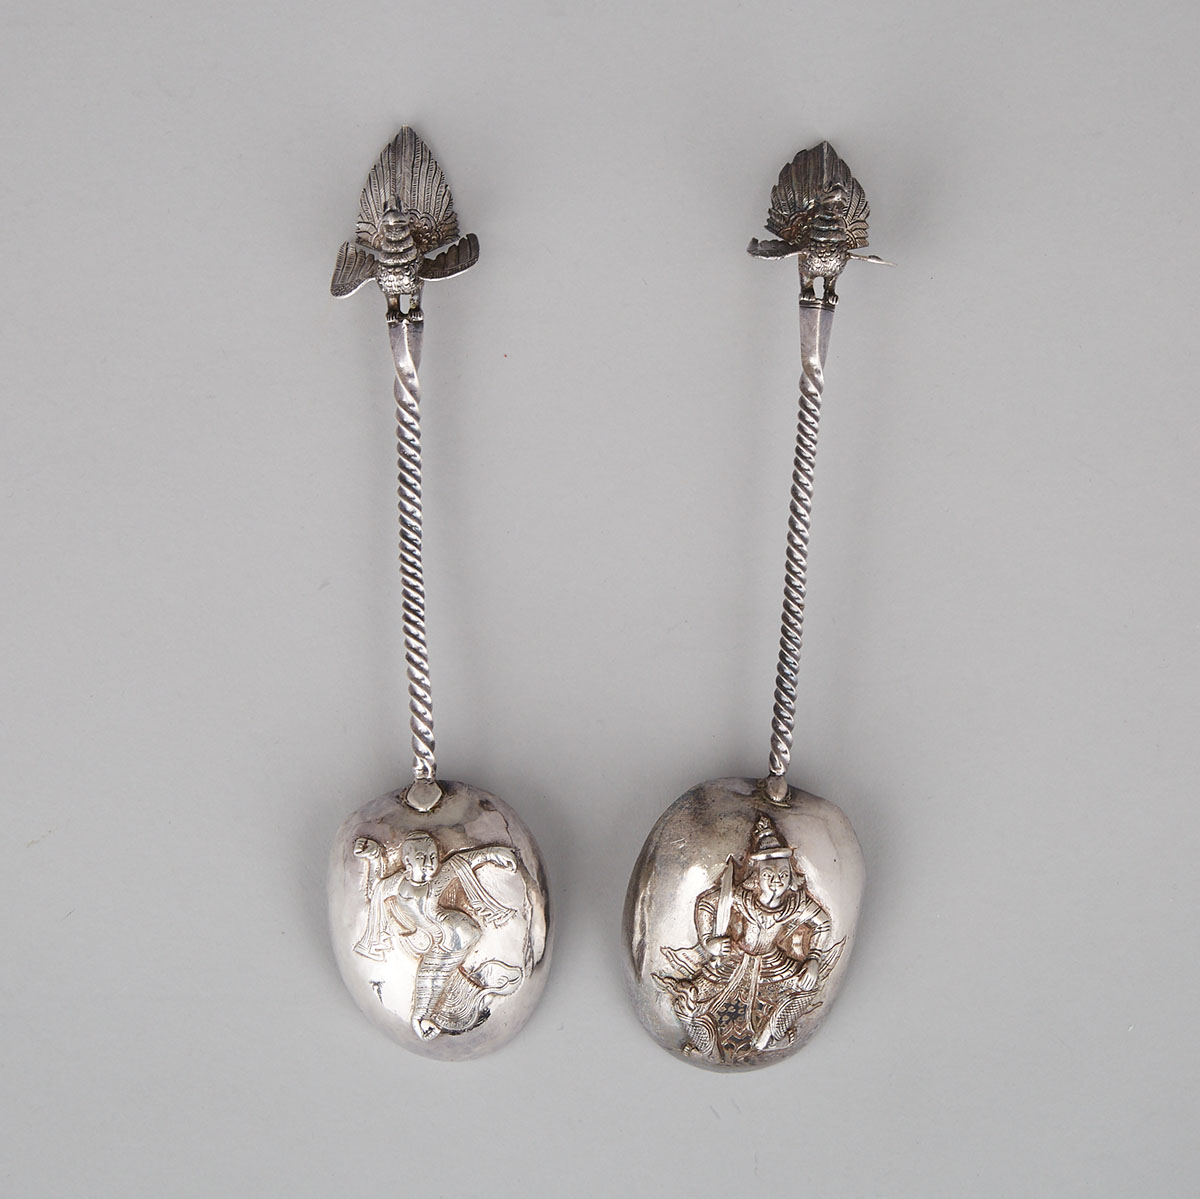 Pair of Burmese Silver Serving Spoons, c.1900